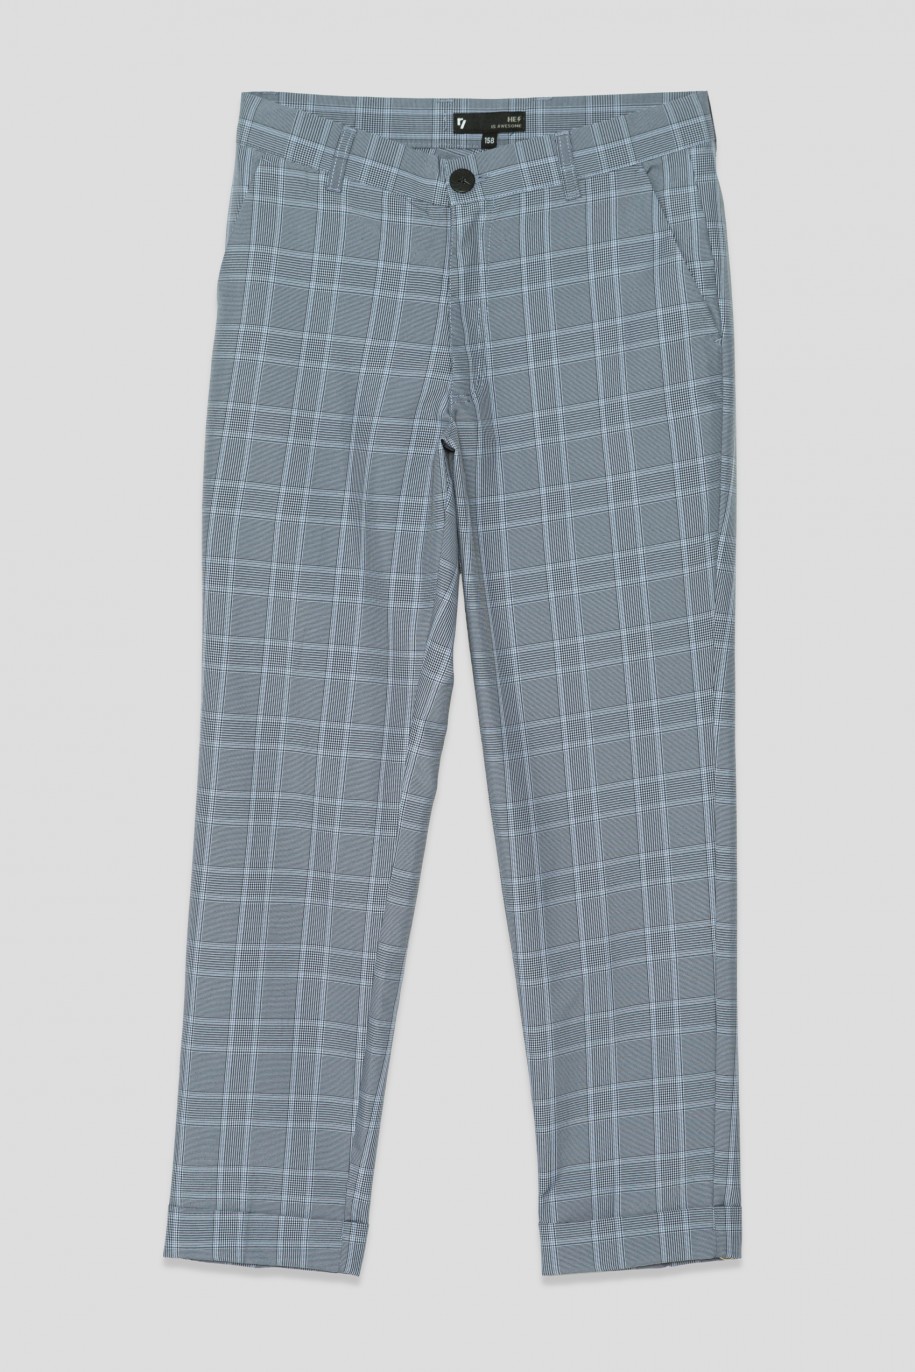 Eleganckie spodnie garniturowe w kratę dla chłopaka - 33593